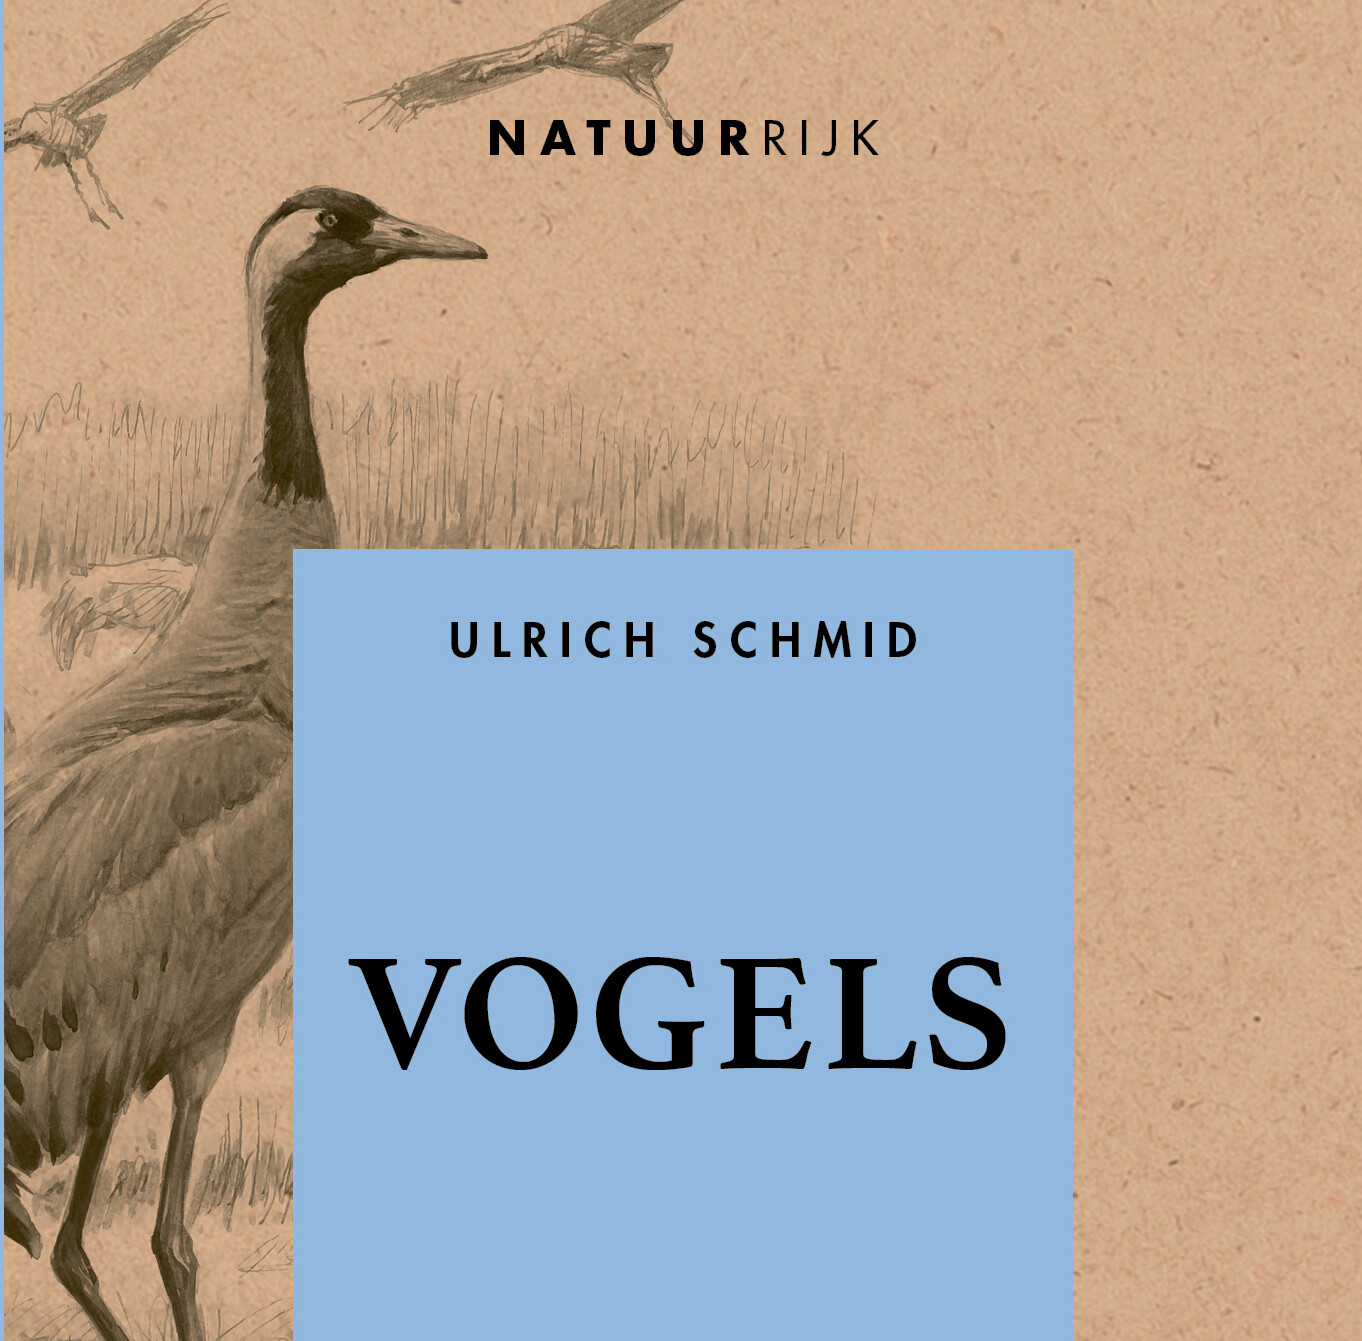 Vogels - Ulrich Schmid - De nachtegaal